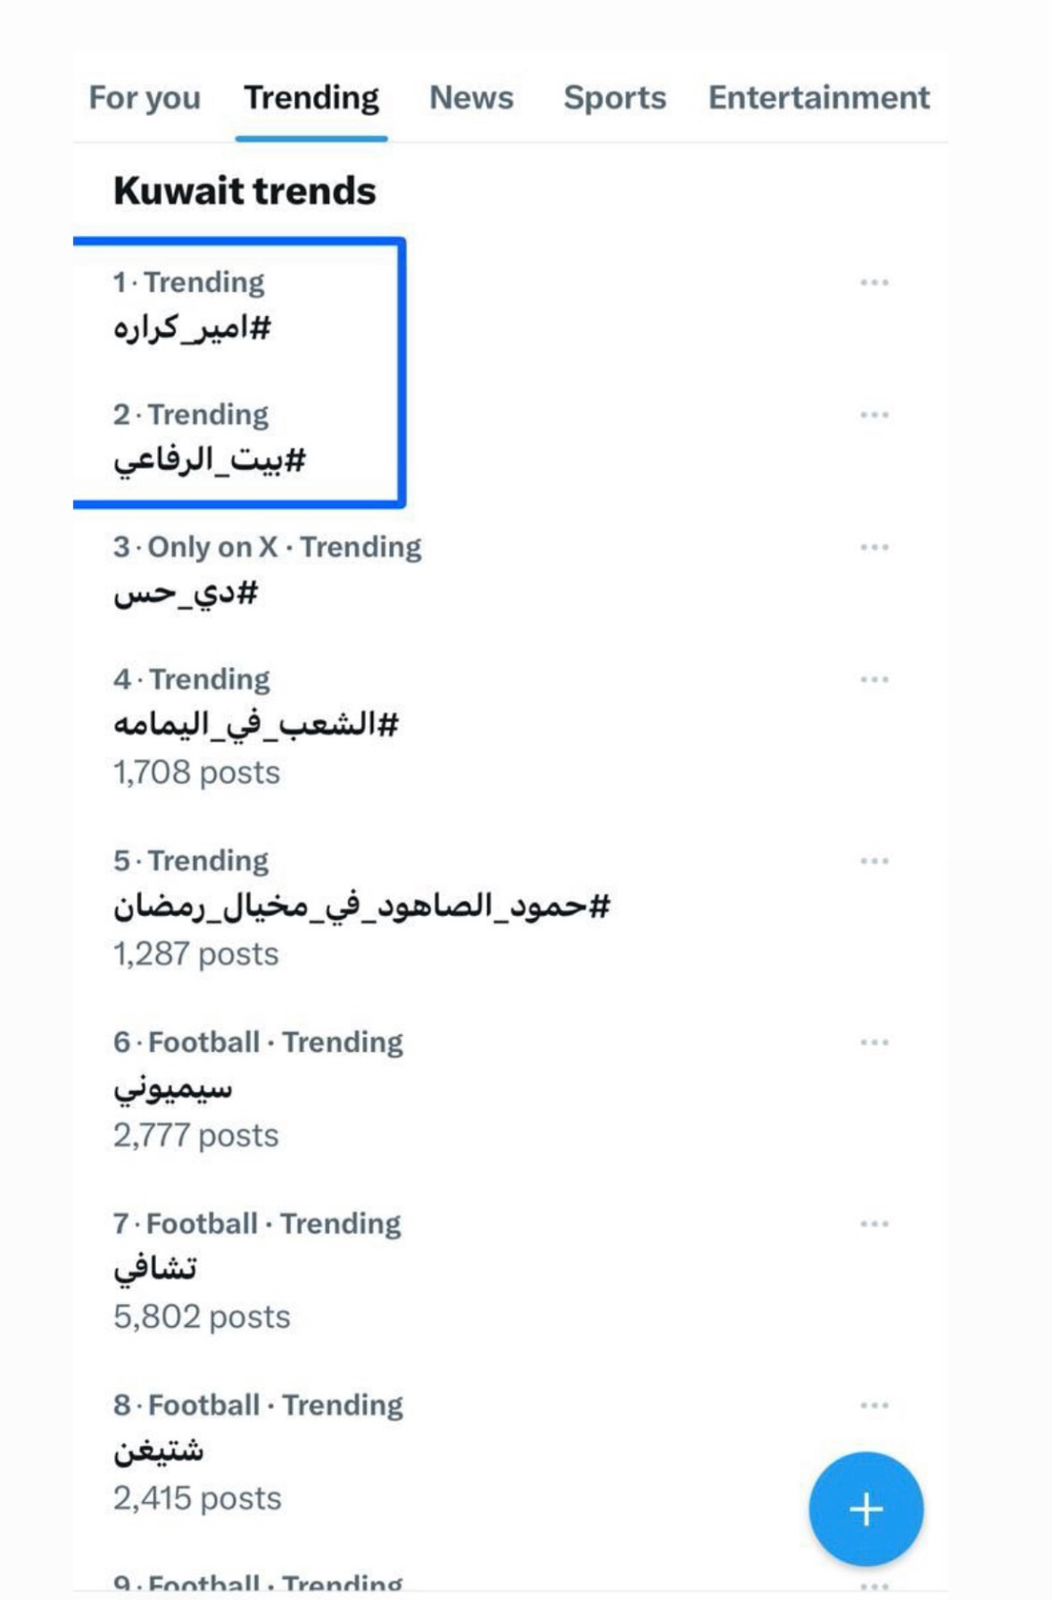 مسلسل بيت الرفاعى يتصدر موقع "X" فى مصر والدولة العربية بعد عرض الحلقة السابعة 